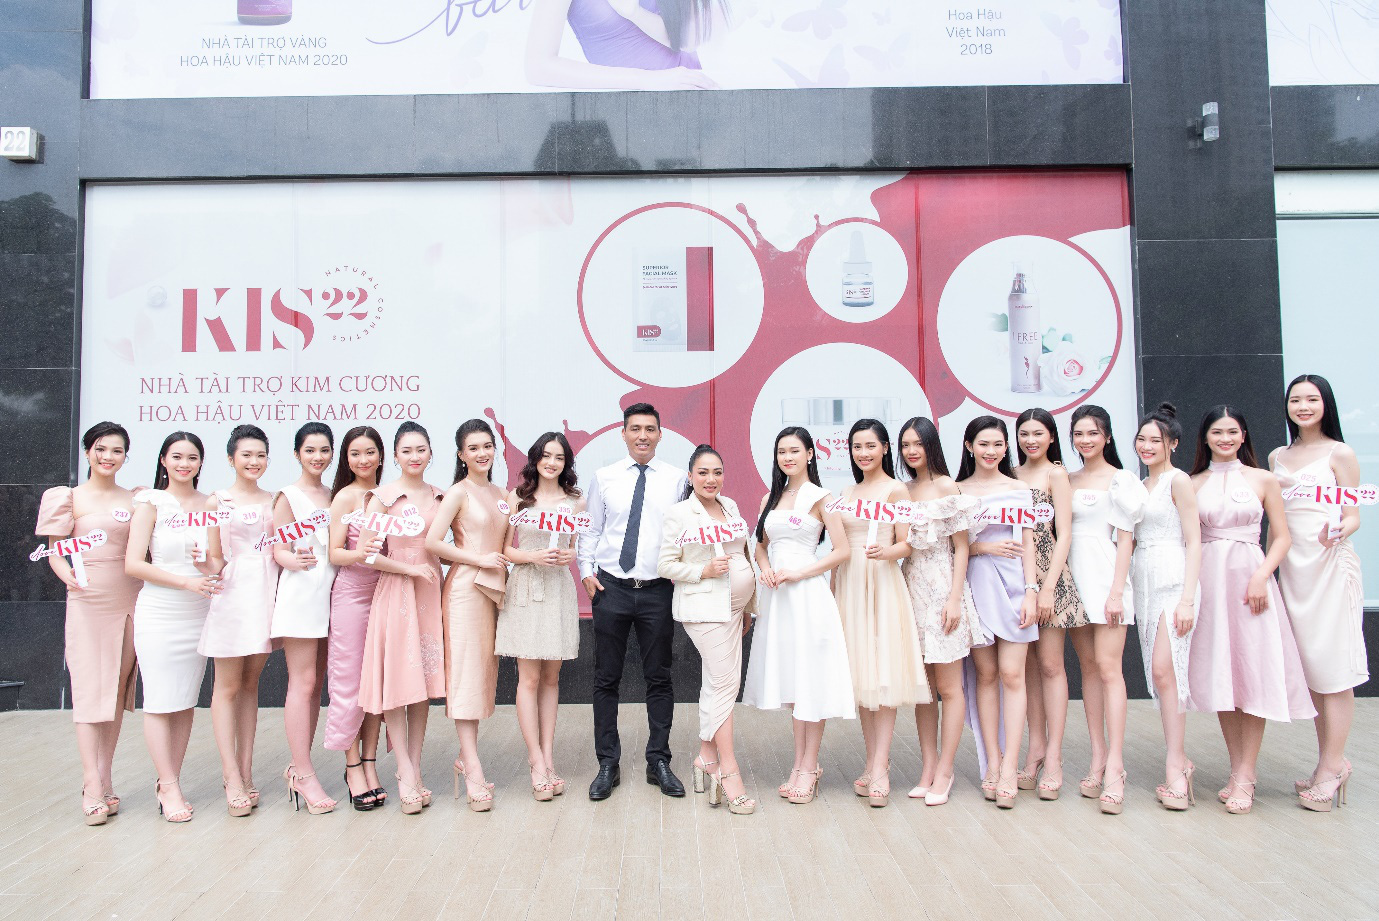 CEO KIS 22 “truyền lửa” cho thí sinh Hoa hậu Việt Nam 2020 trước thềm Chung kết toàn quốc - Ảnh 1.